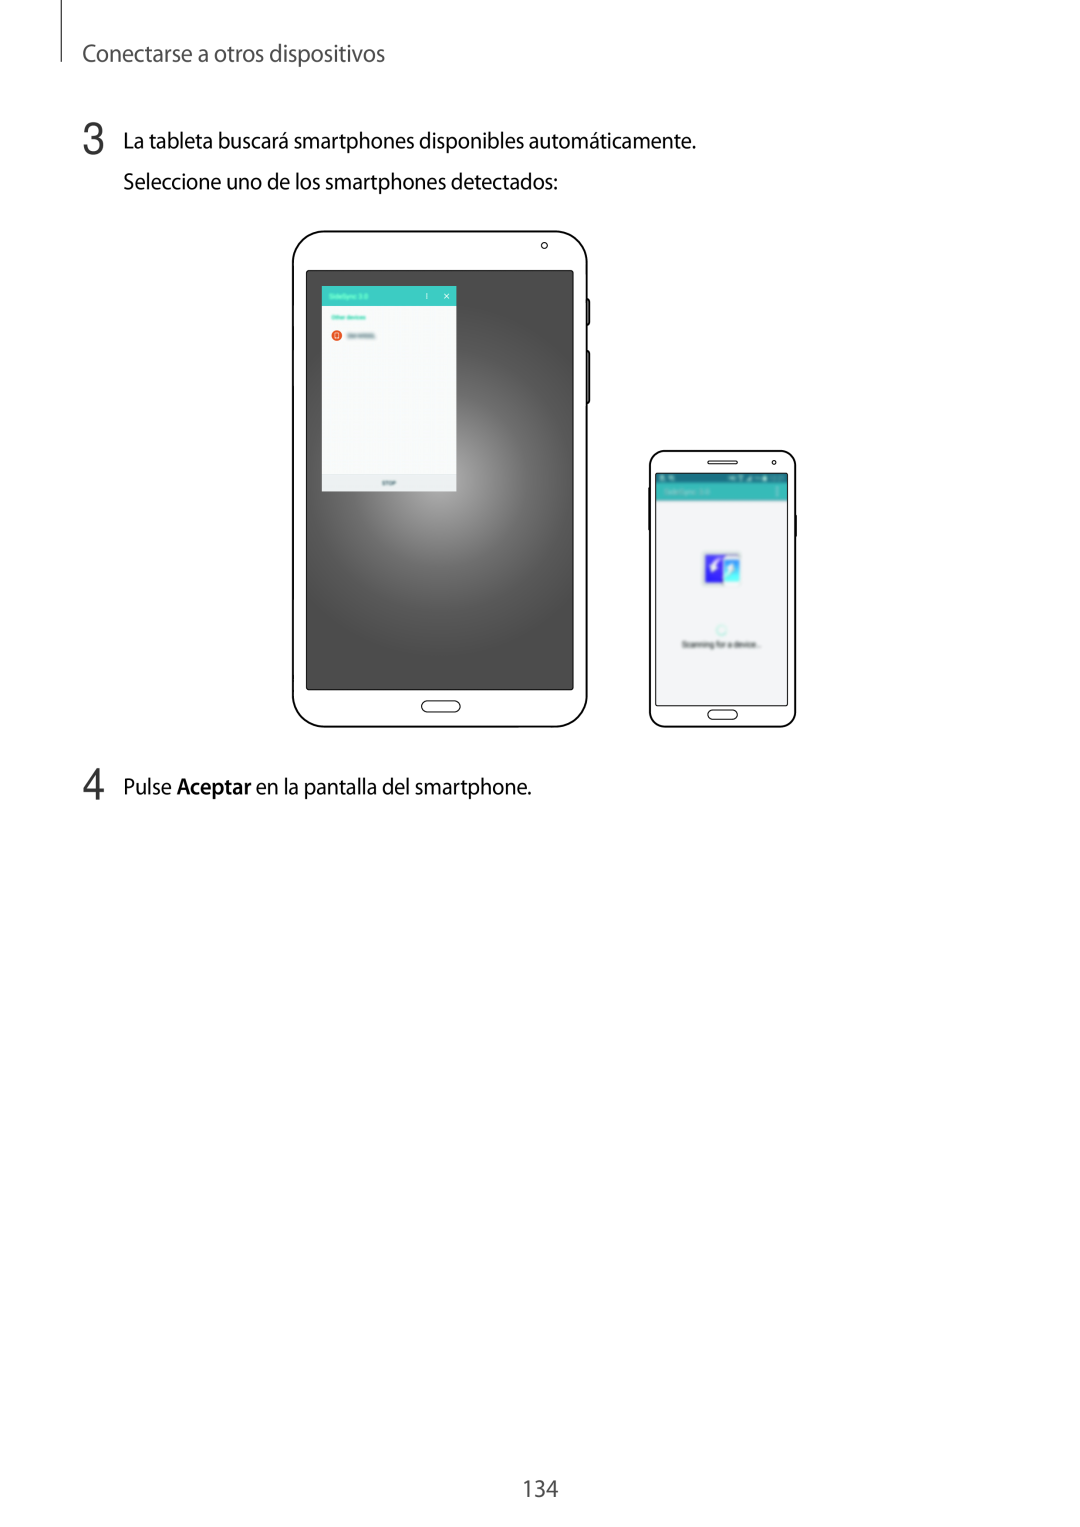 Samsung SM-T700NZWAPHE, SM-T700NZWAXEO manual Conectarse a otros dispositivos, Pulse Aceptar en la pantalla del smartphone 